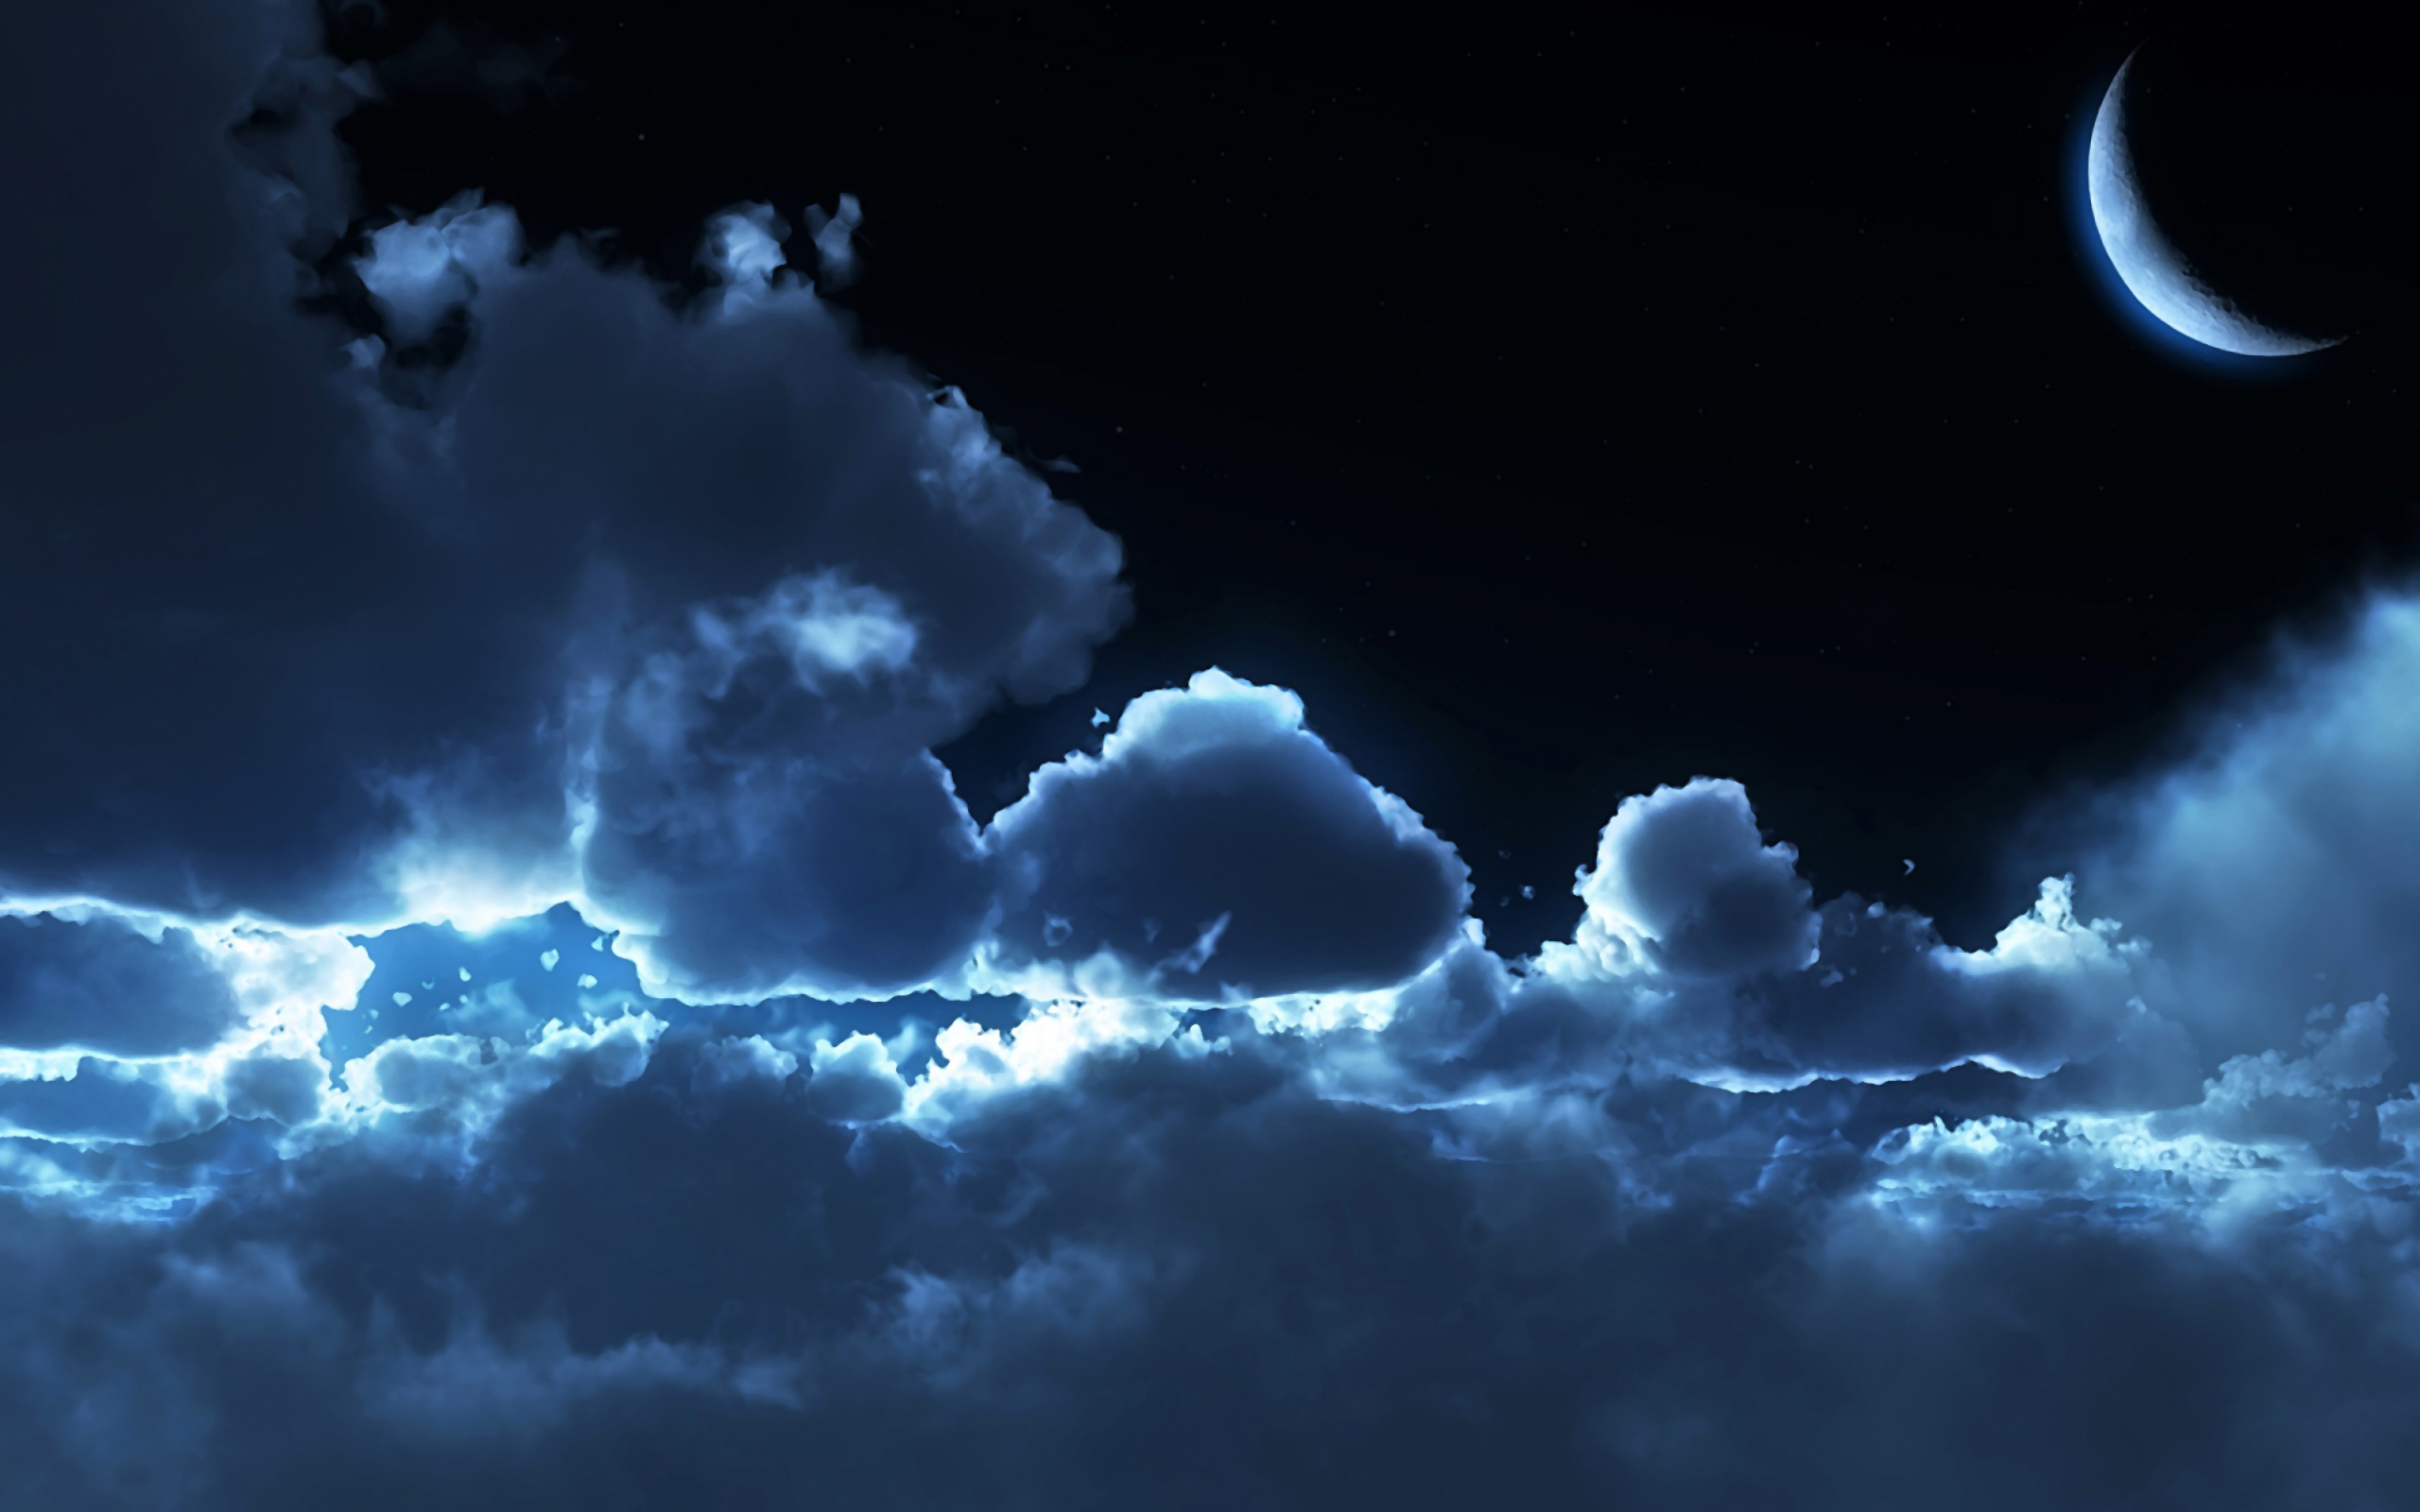 Night Cloud Wallpaper Hd | Pixelstalk.net